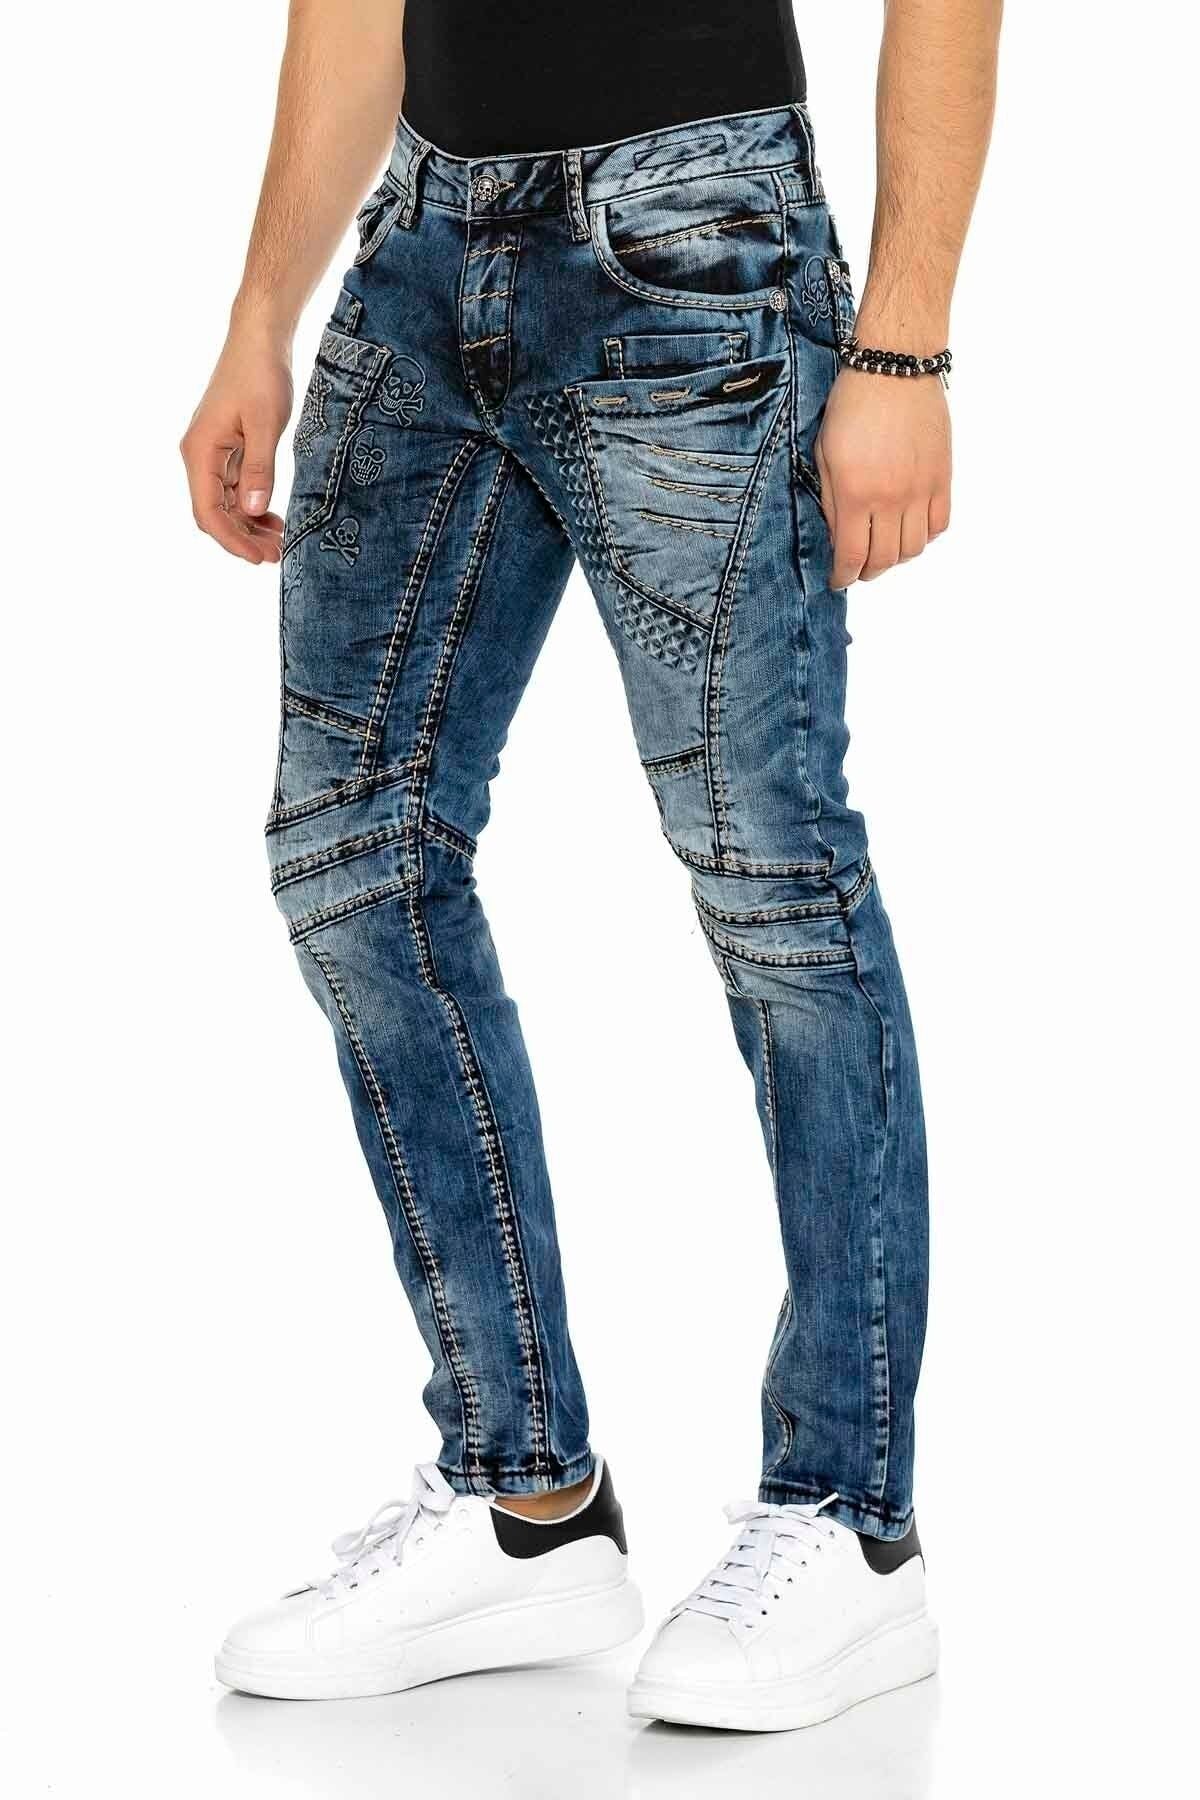 CD418 Jeans confortable pour hommes avec des surpiqûres tendance en coupe droite